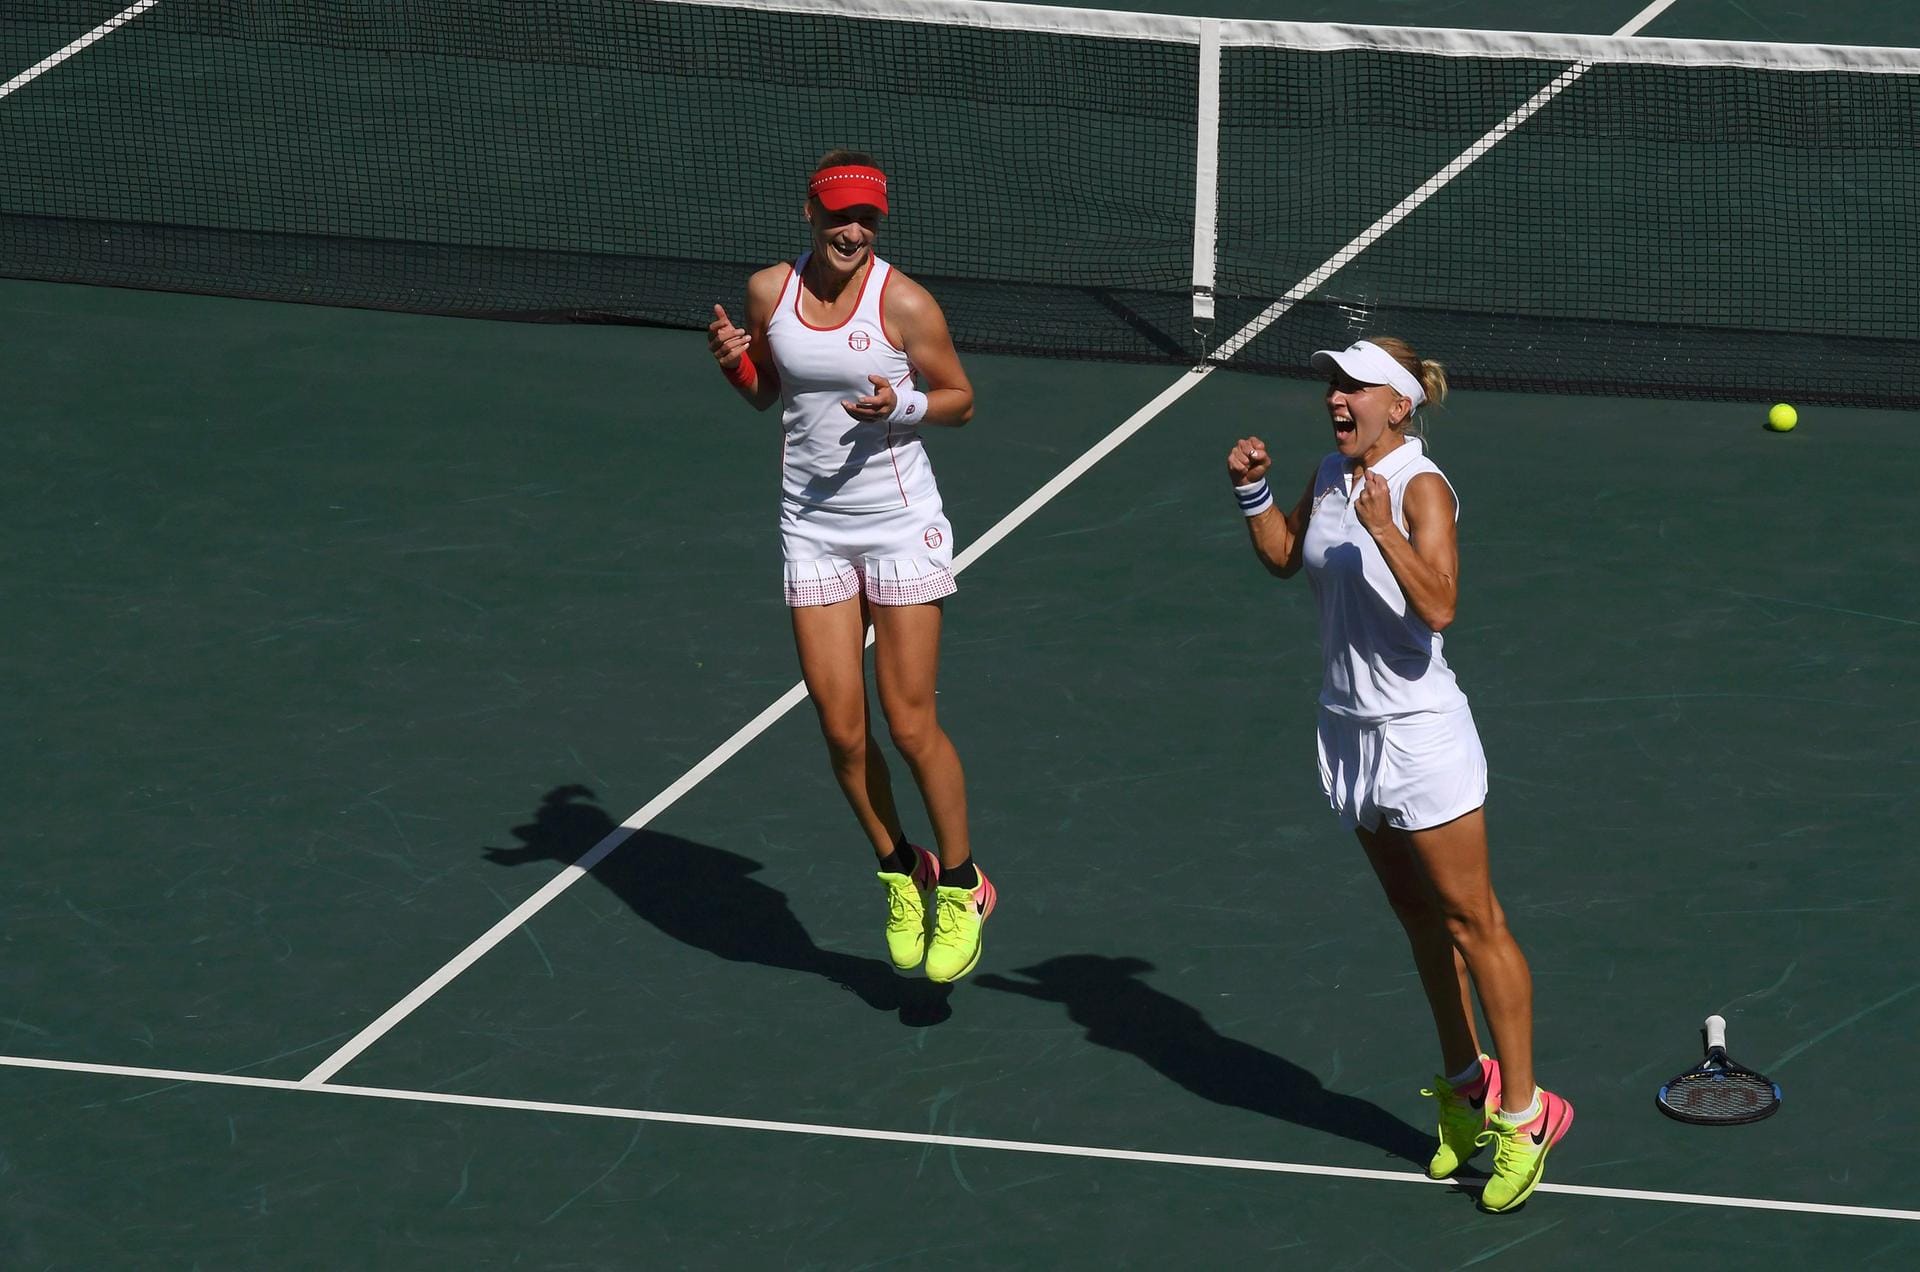 Freudensprünge: Russlands Tennis-Duo Elena Vesnina und Ekaterina Makarova wollte förmlich in die Luft gehen. Verständlich. Schließlich holten sie sich Gold im Damen-Doppel.